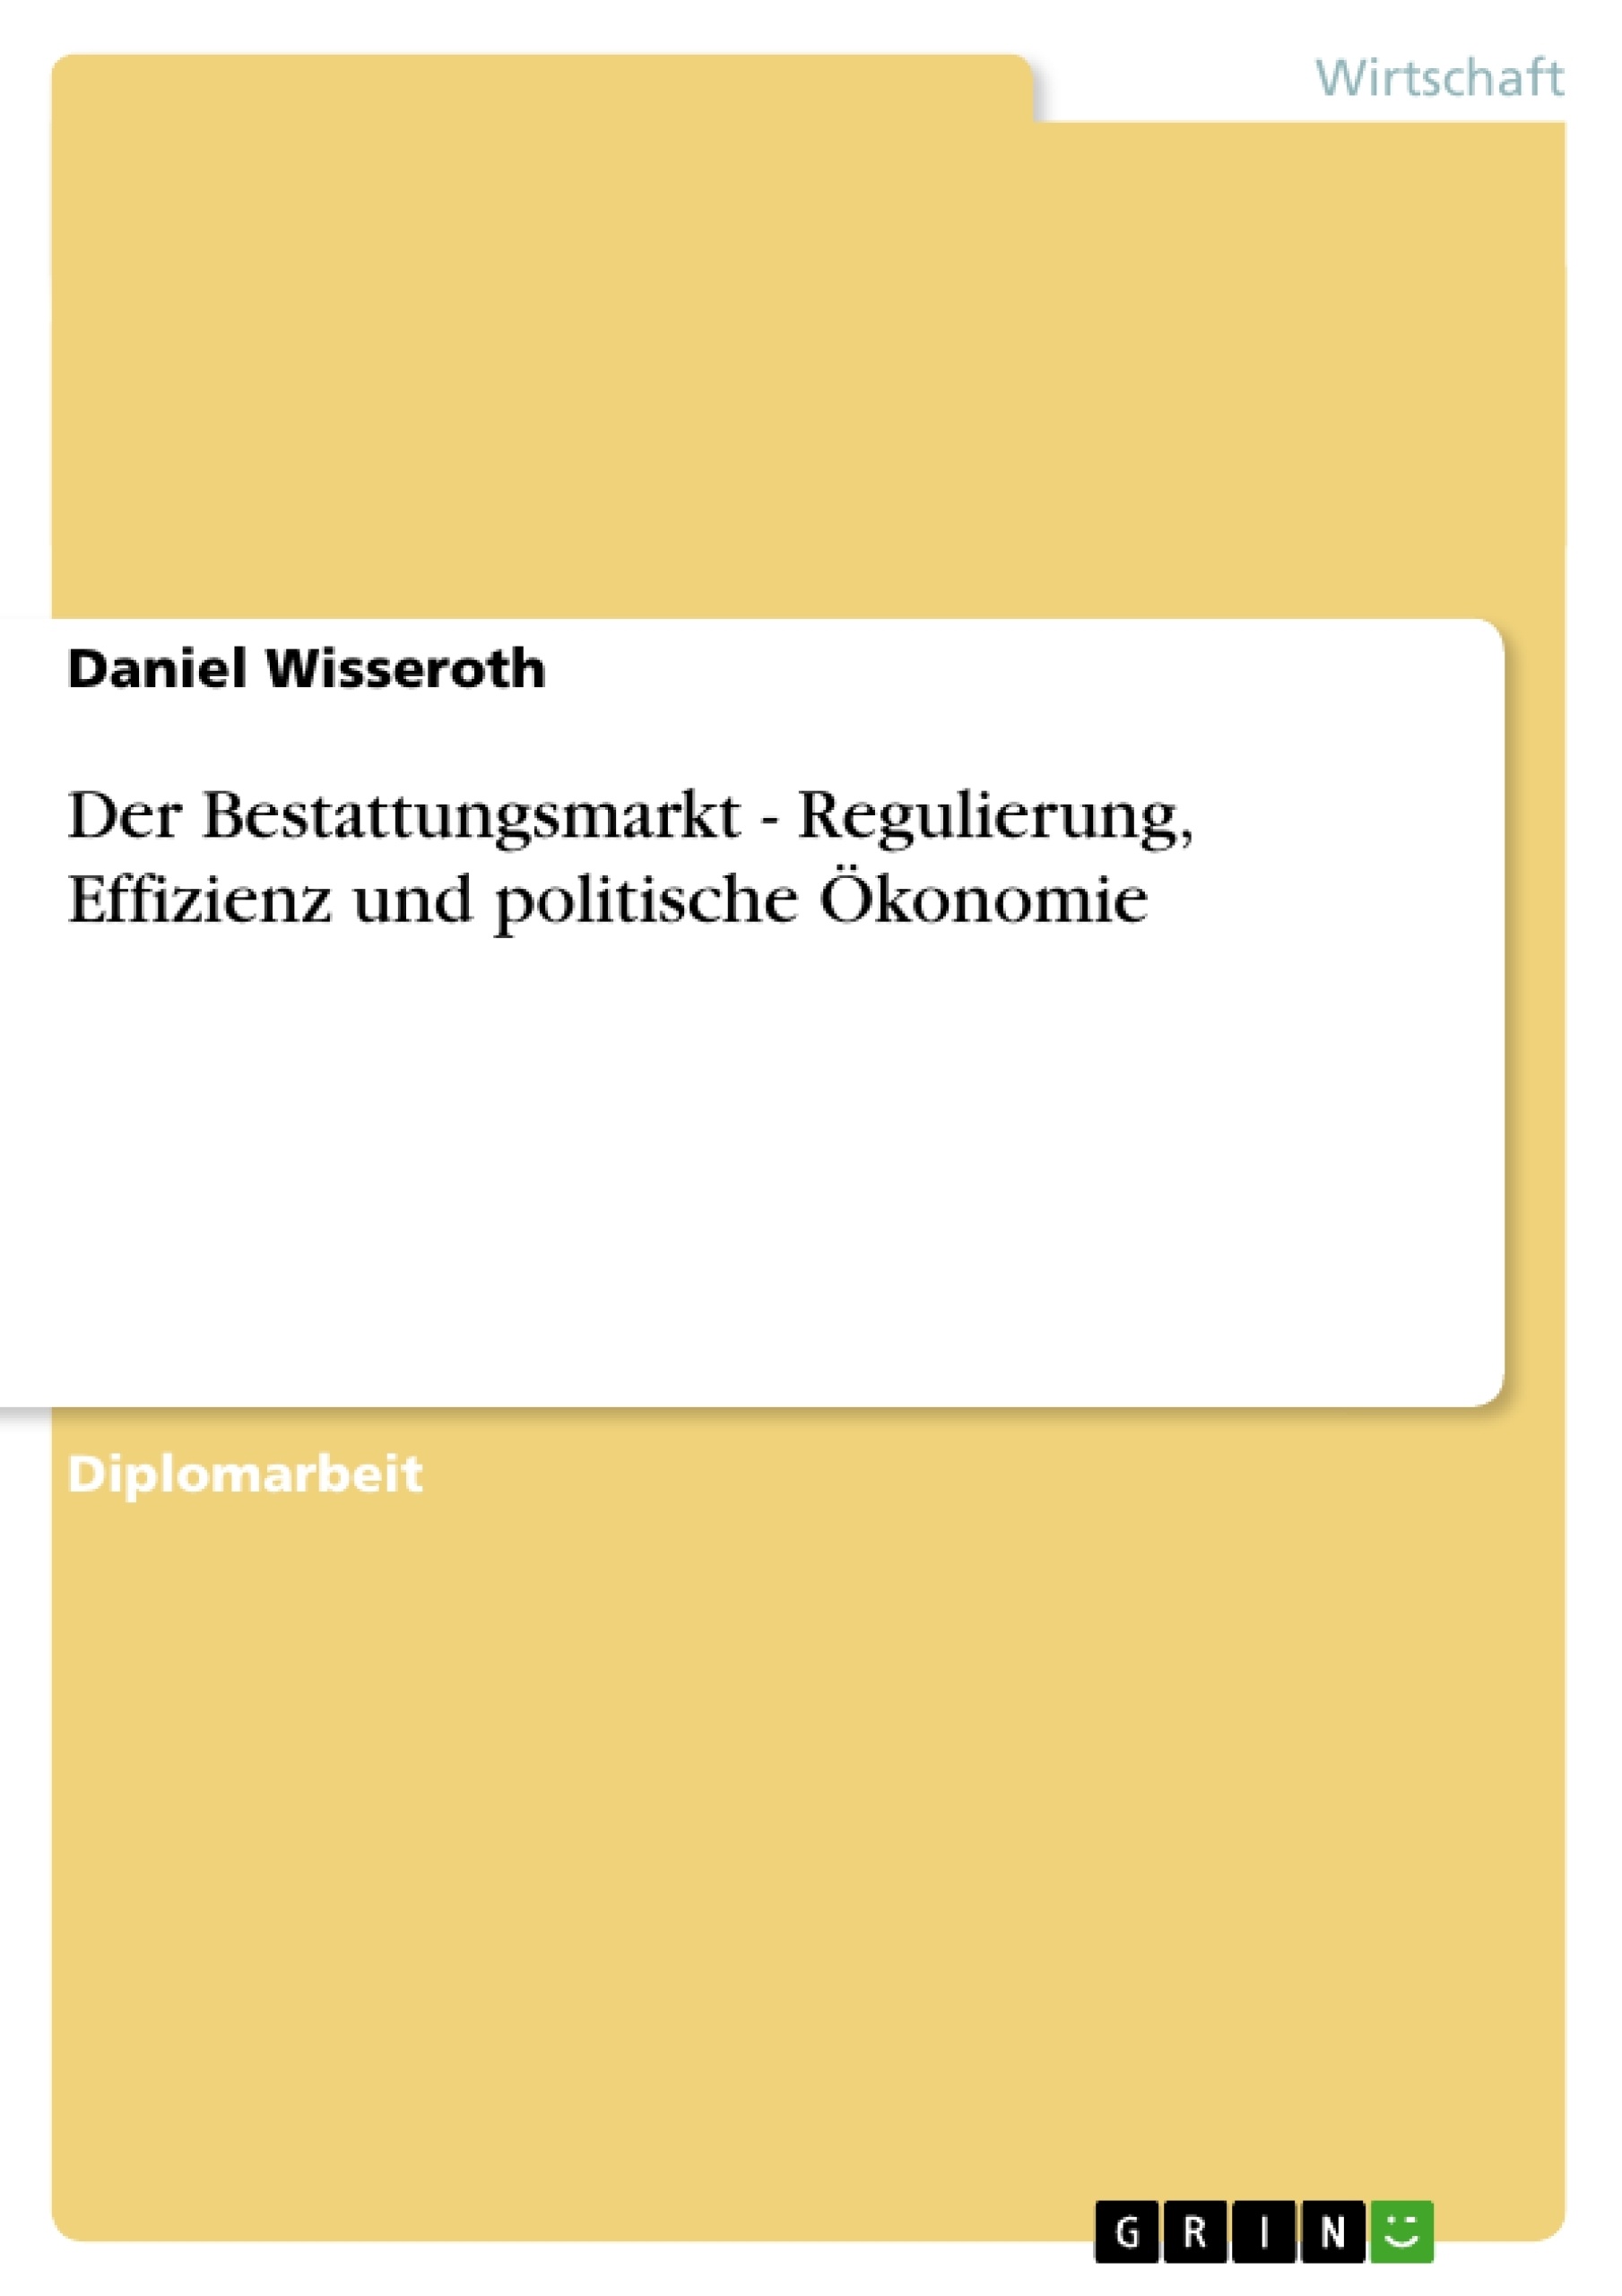 Título: Der Bestattungsmarkt - Regulierung, Effizienz und politische Ökonomie